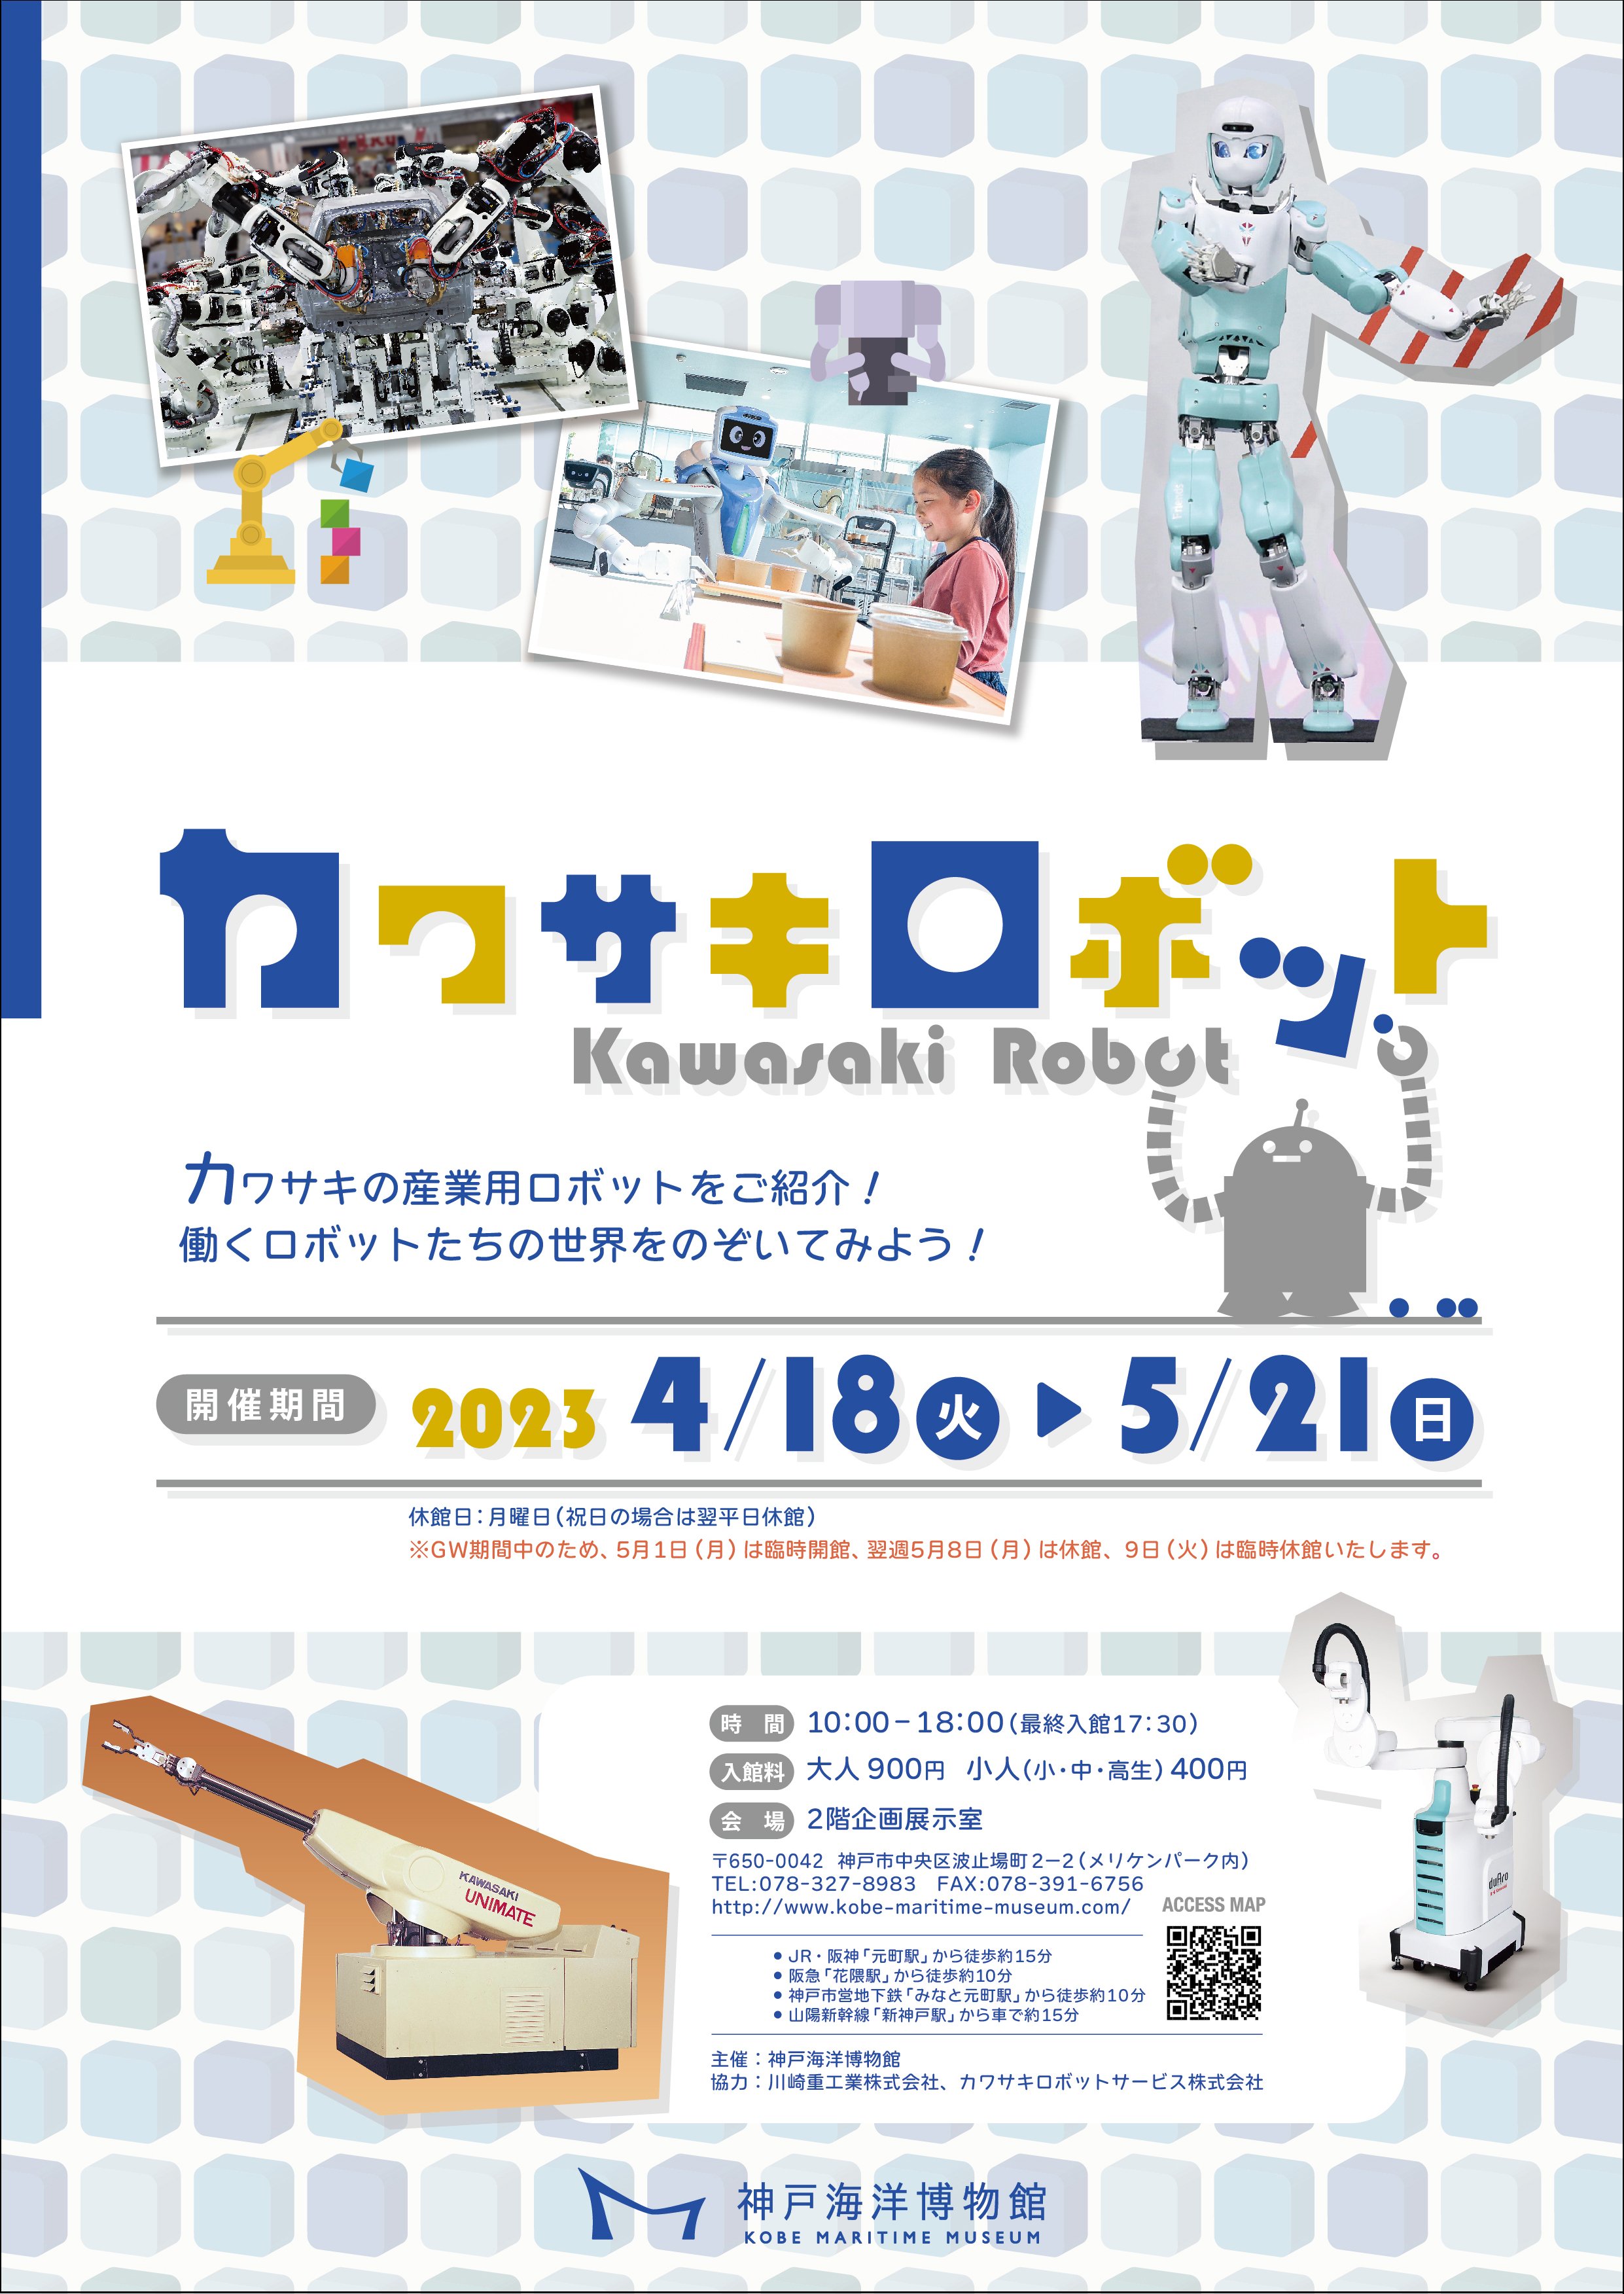 神戸海洋博物館で企画展「カワサキロボット」開催　神戸市中央区 [画像]